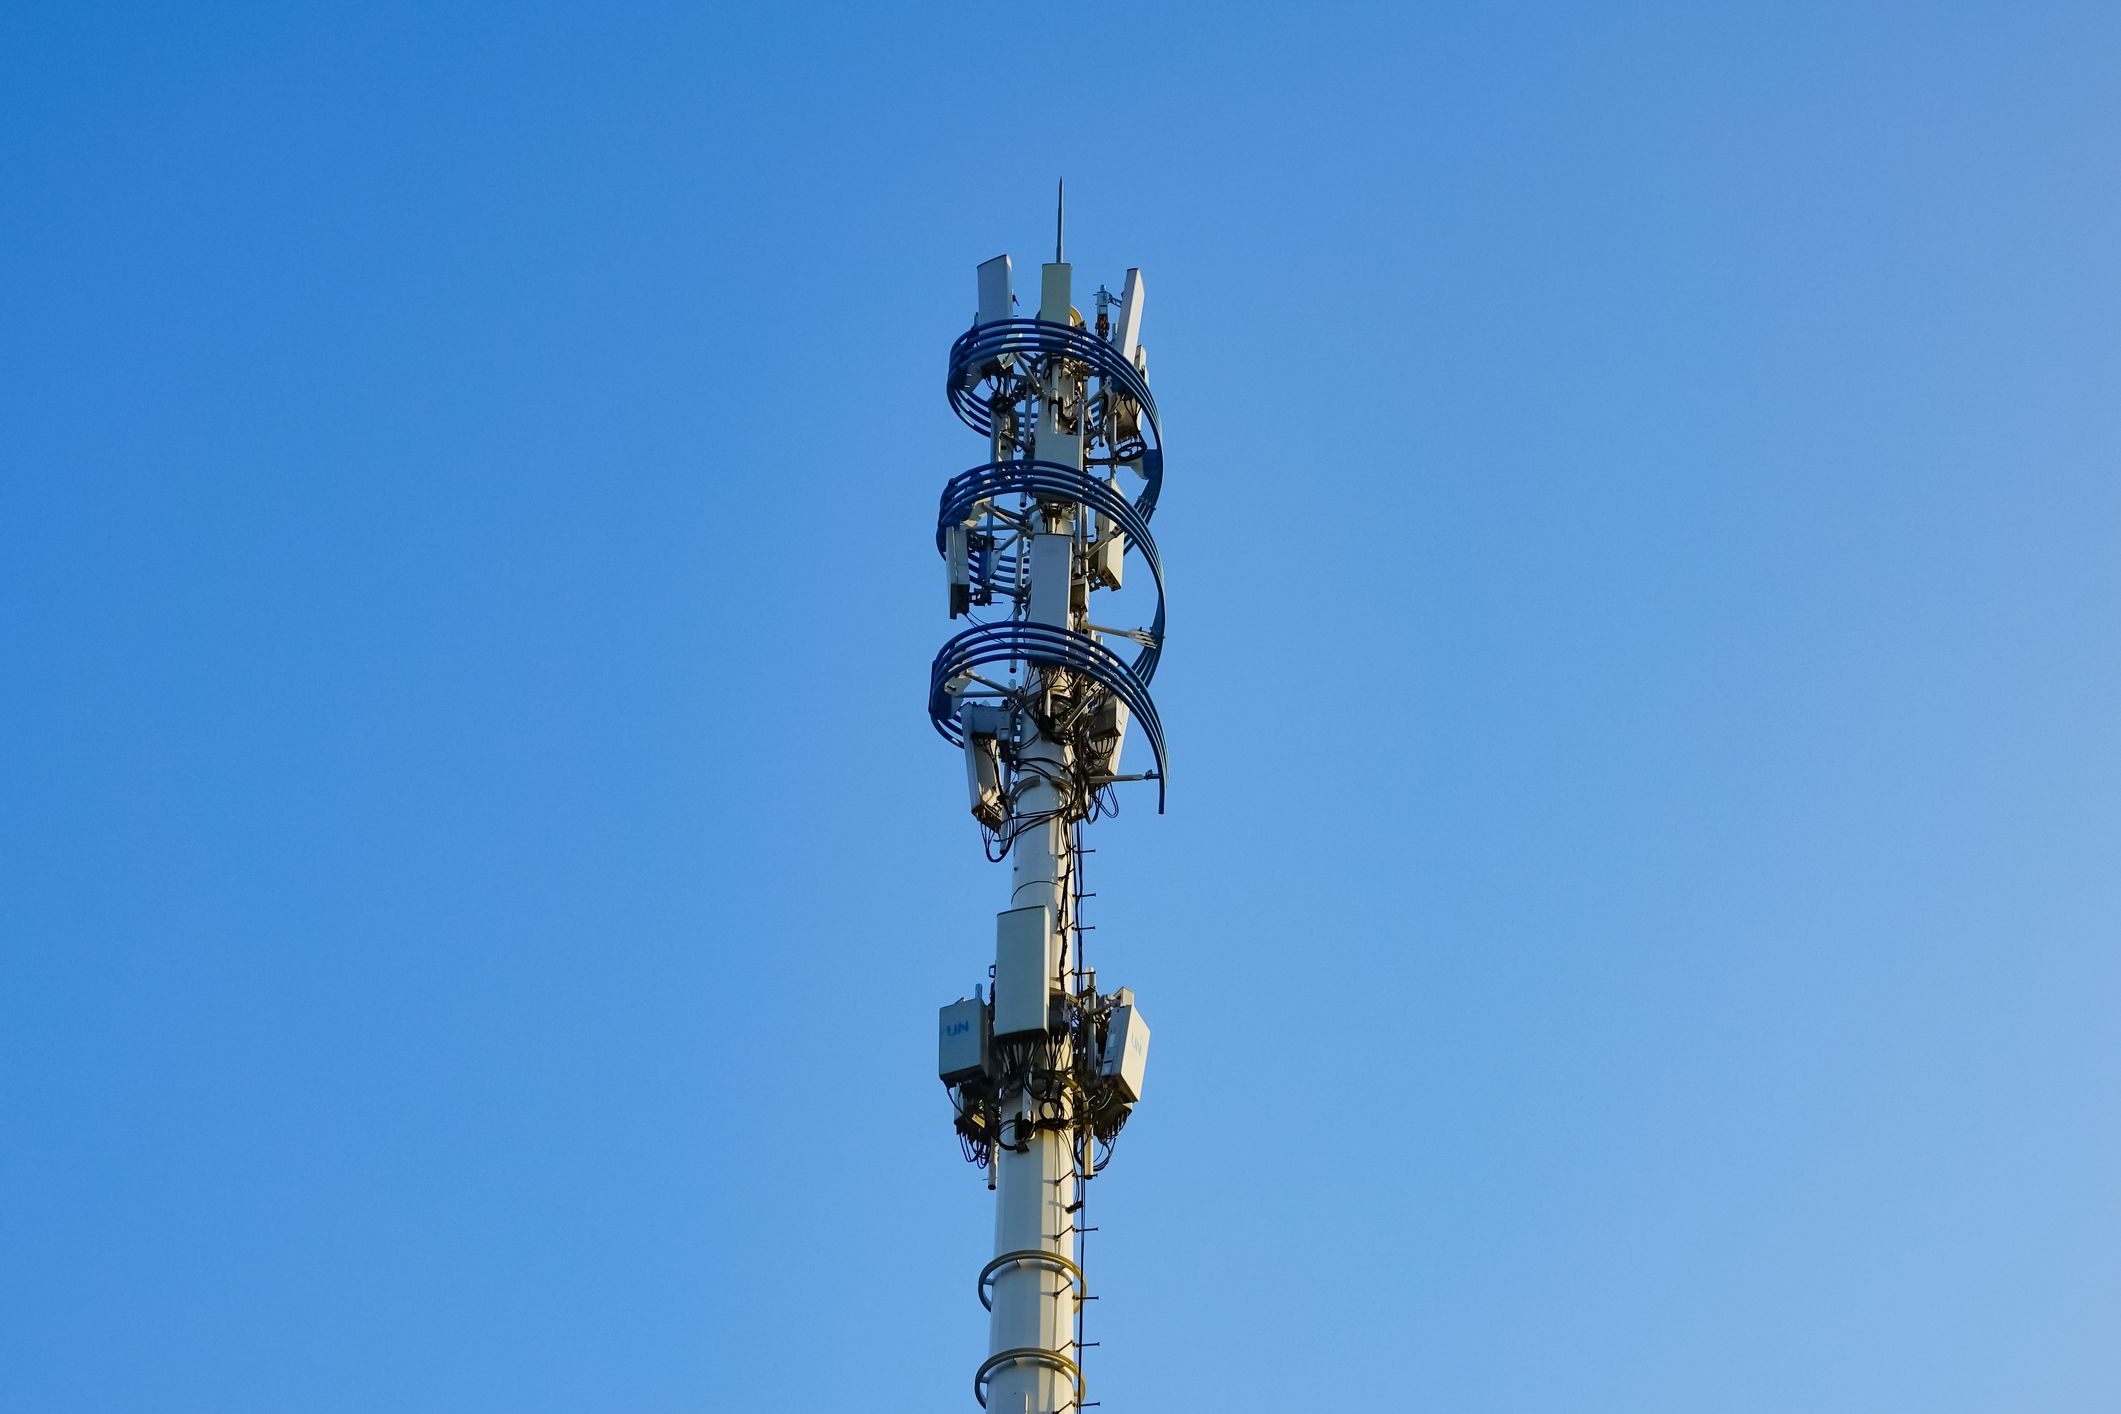 Uma torre de celular de estação base 5G.